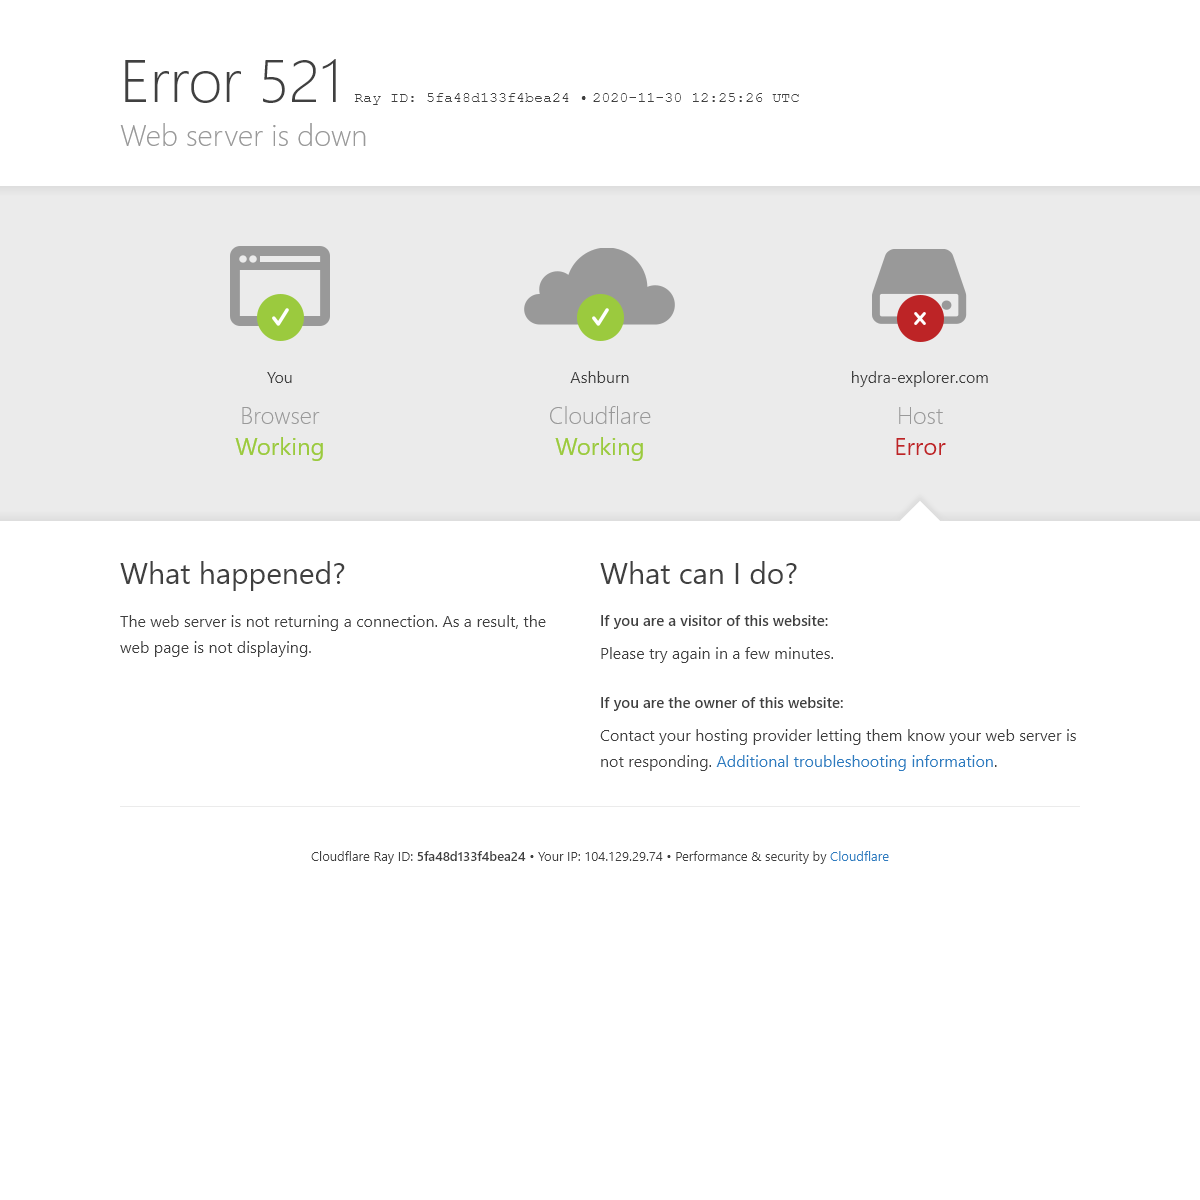 hydra-explorer.com - 521- Web server is down